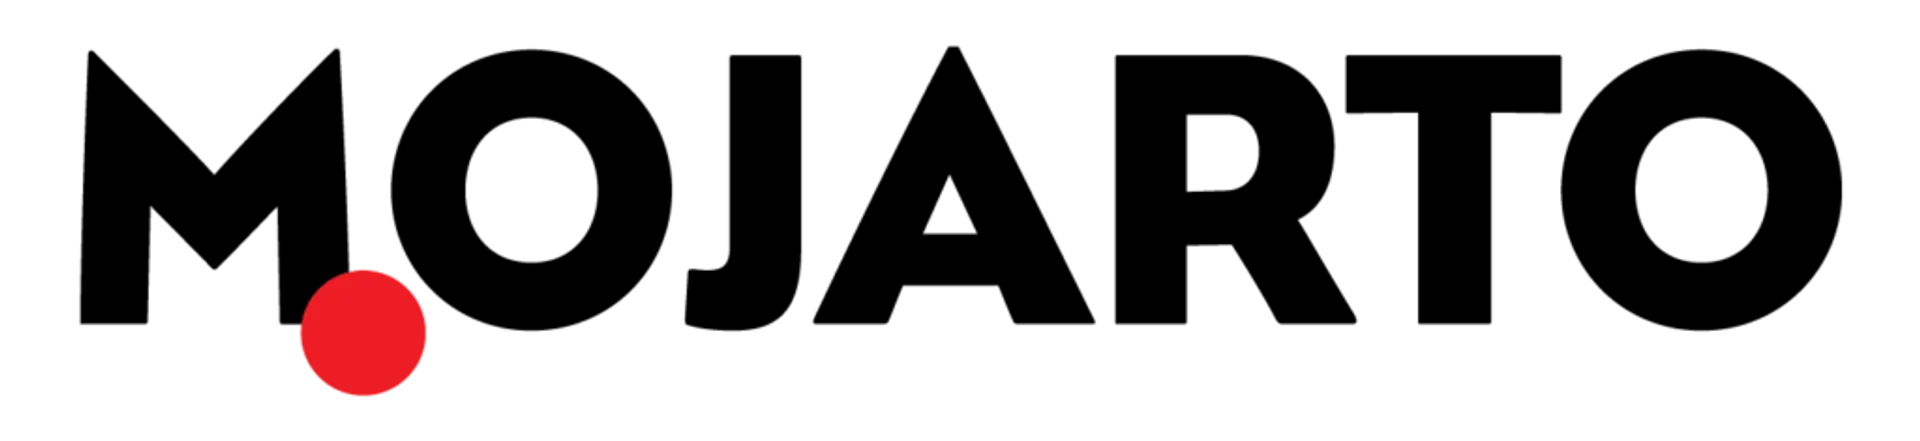 MOJARTO logo. Current catalogue